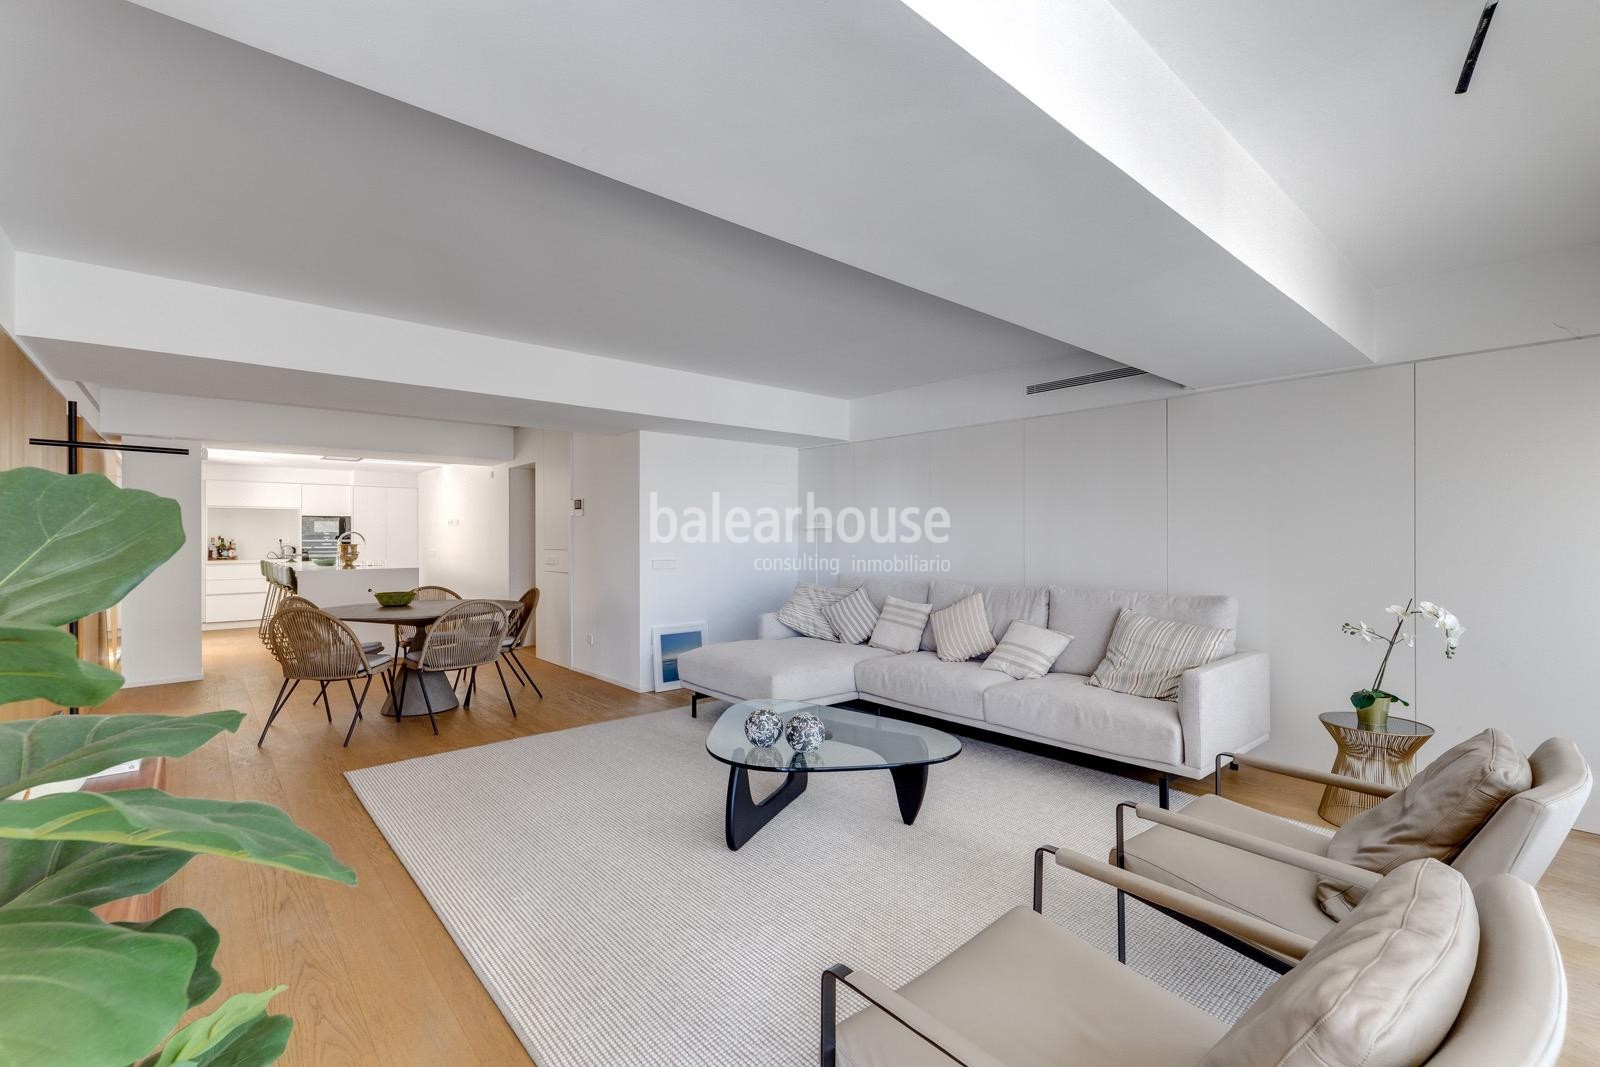 Exclusivos pisos nuevos frente al mar de Palma donde vivir el lujo más contemporáneo.